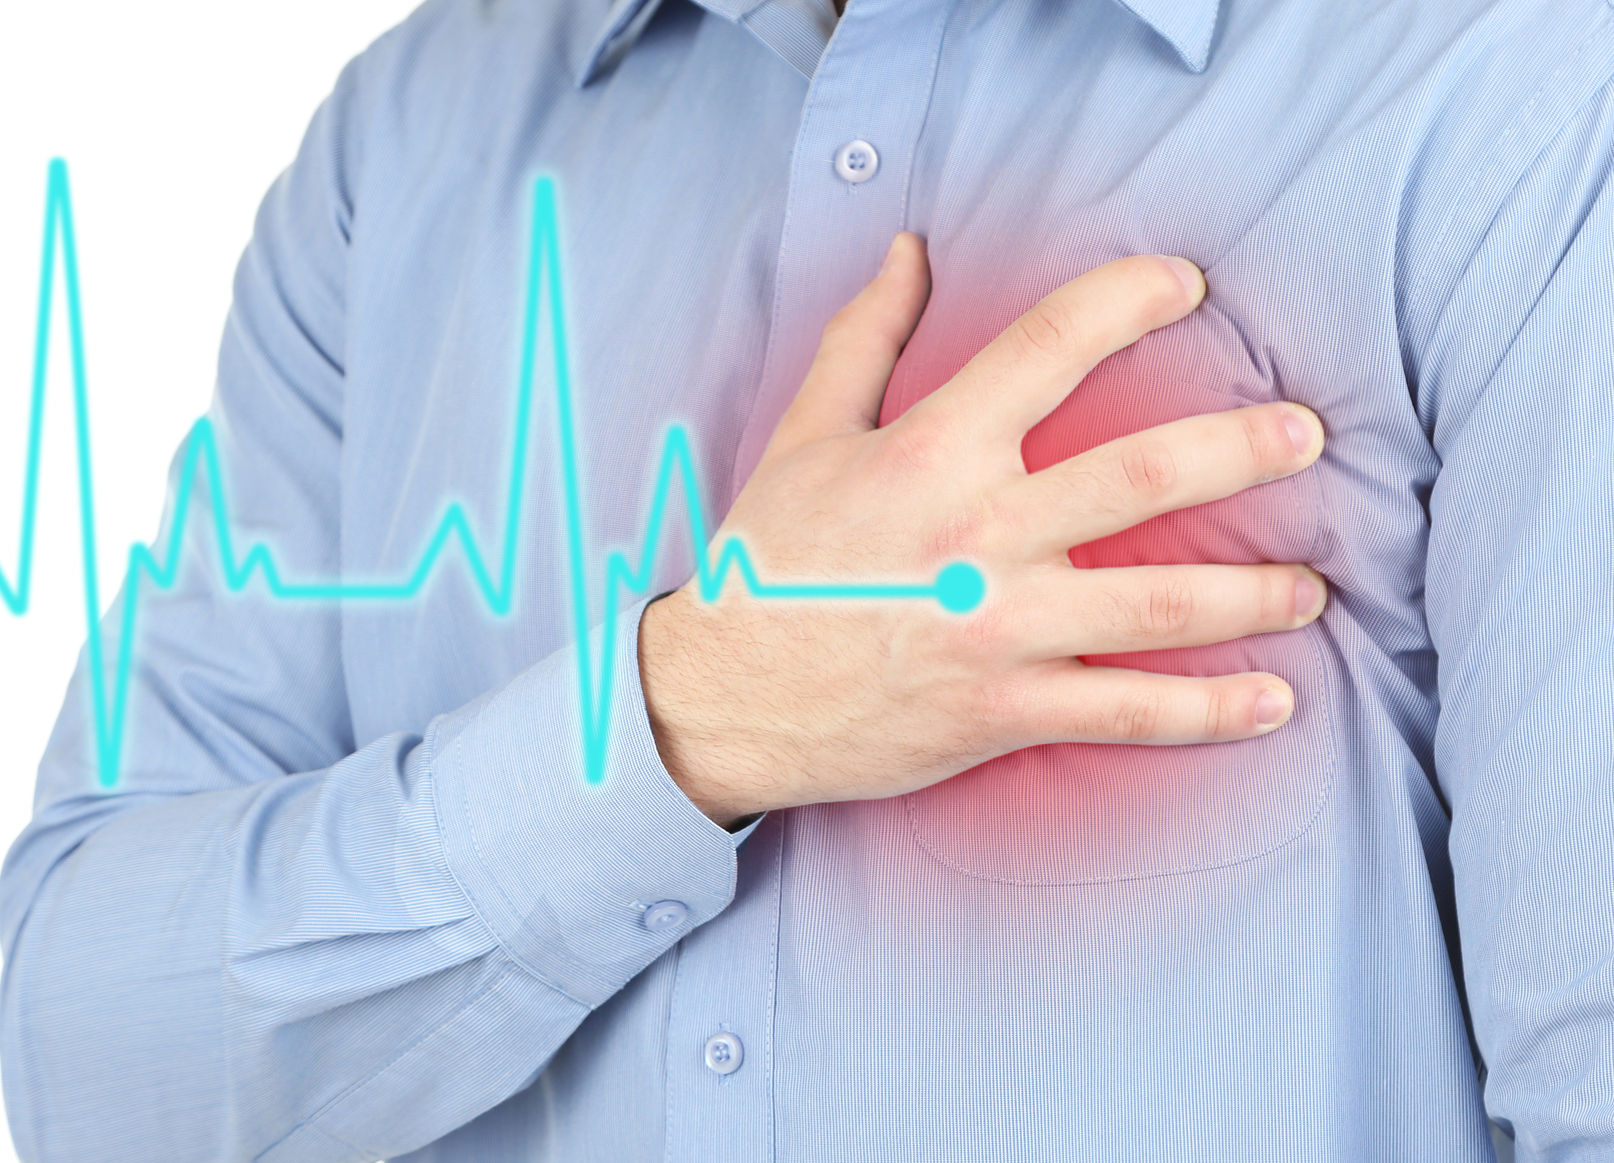 การใช้ Lamotrigine กับการเกิดความเสี่ยงต่อภาวะหัวใจเต้นผิดจังหวะในผู้ป่วยโรคหัวใจ